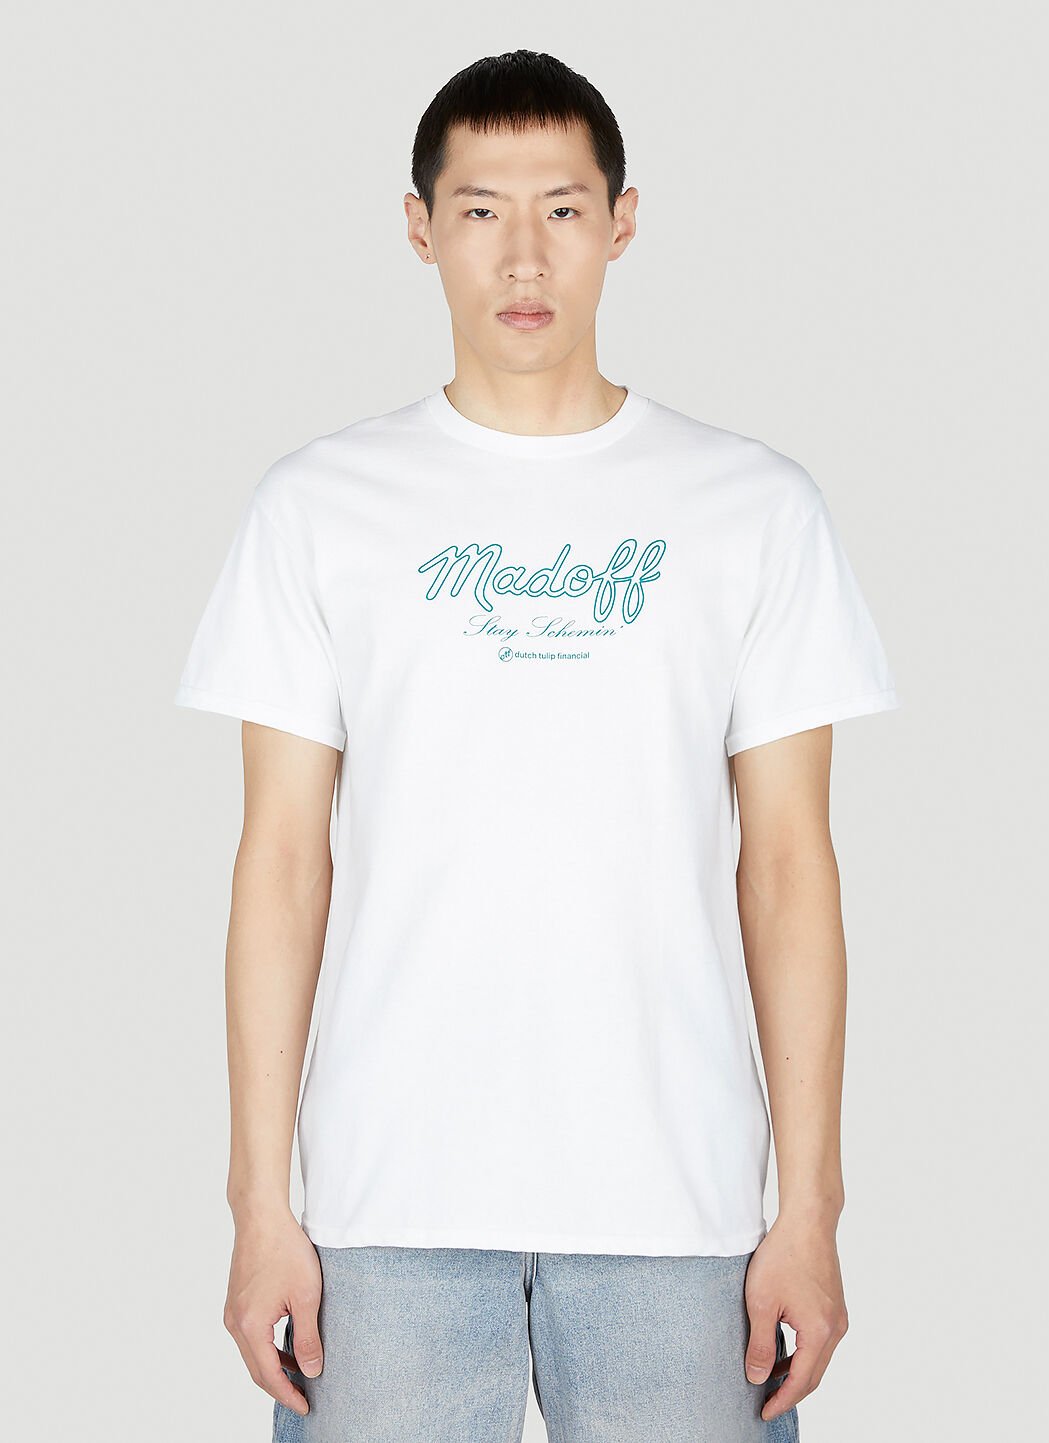 DTF.NYC Madoff 短袖 T 恤 黑色 dtf0152004